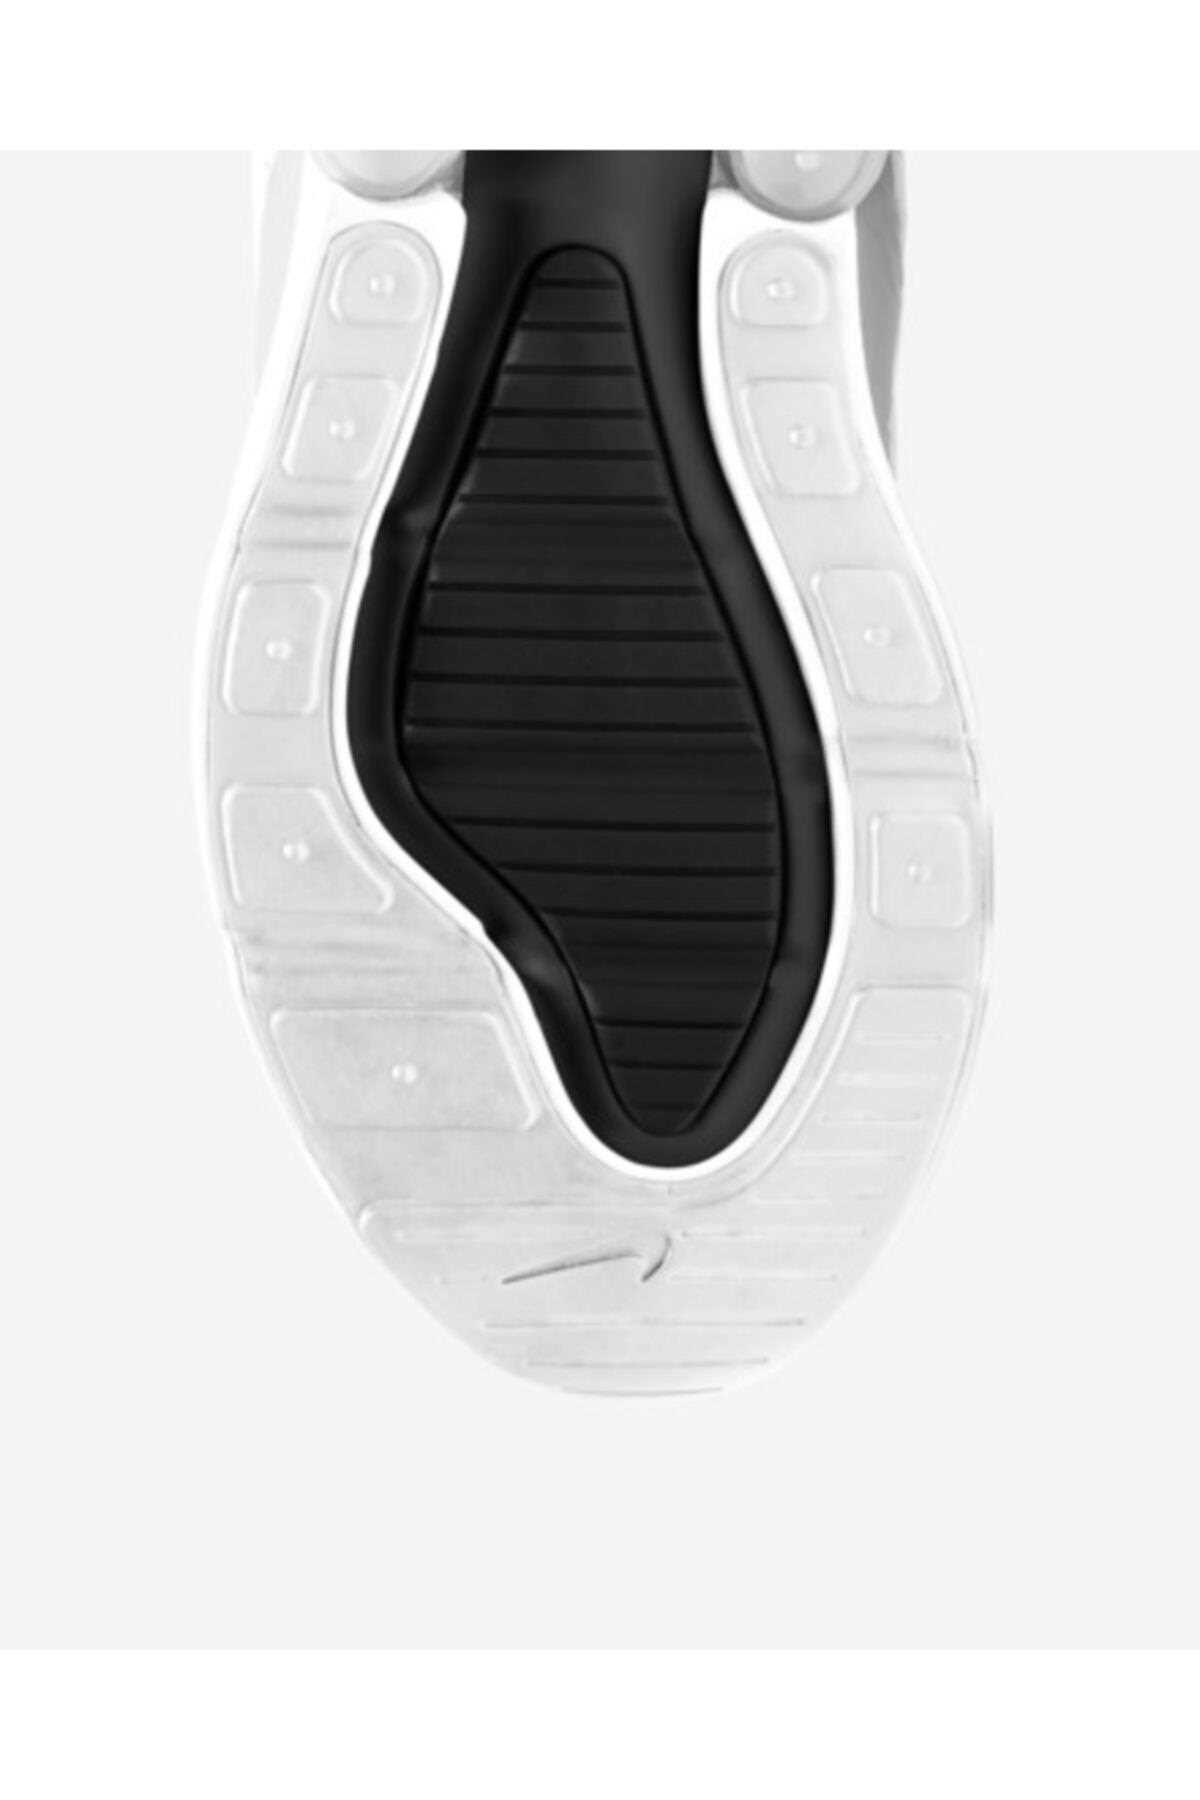 خرید کفش ورزشی برای دویدن ارزان زنانه برند Nike اورجینال رنگ سفید ty147093224